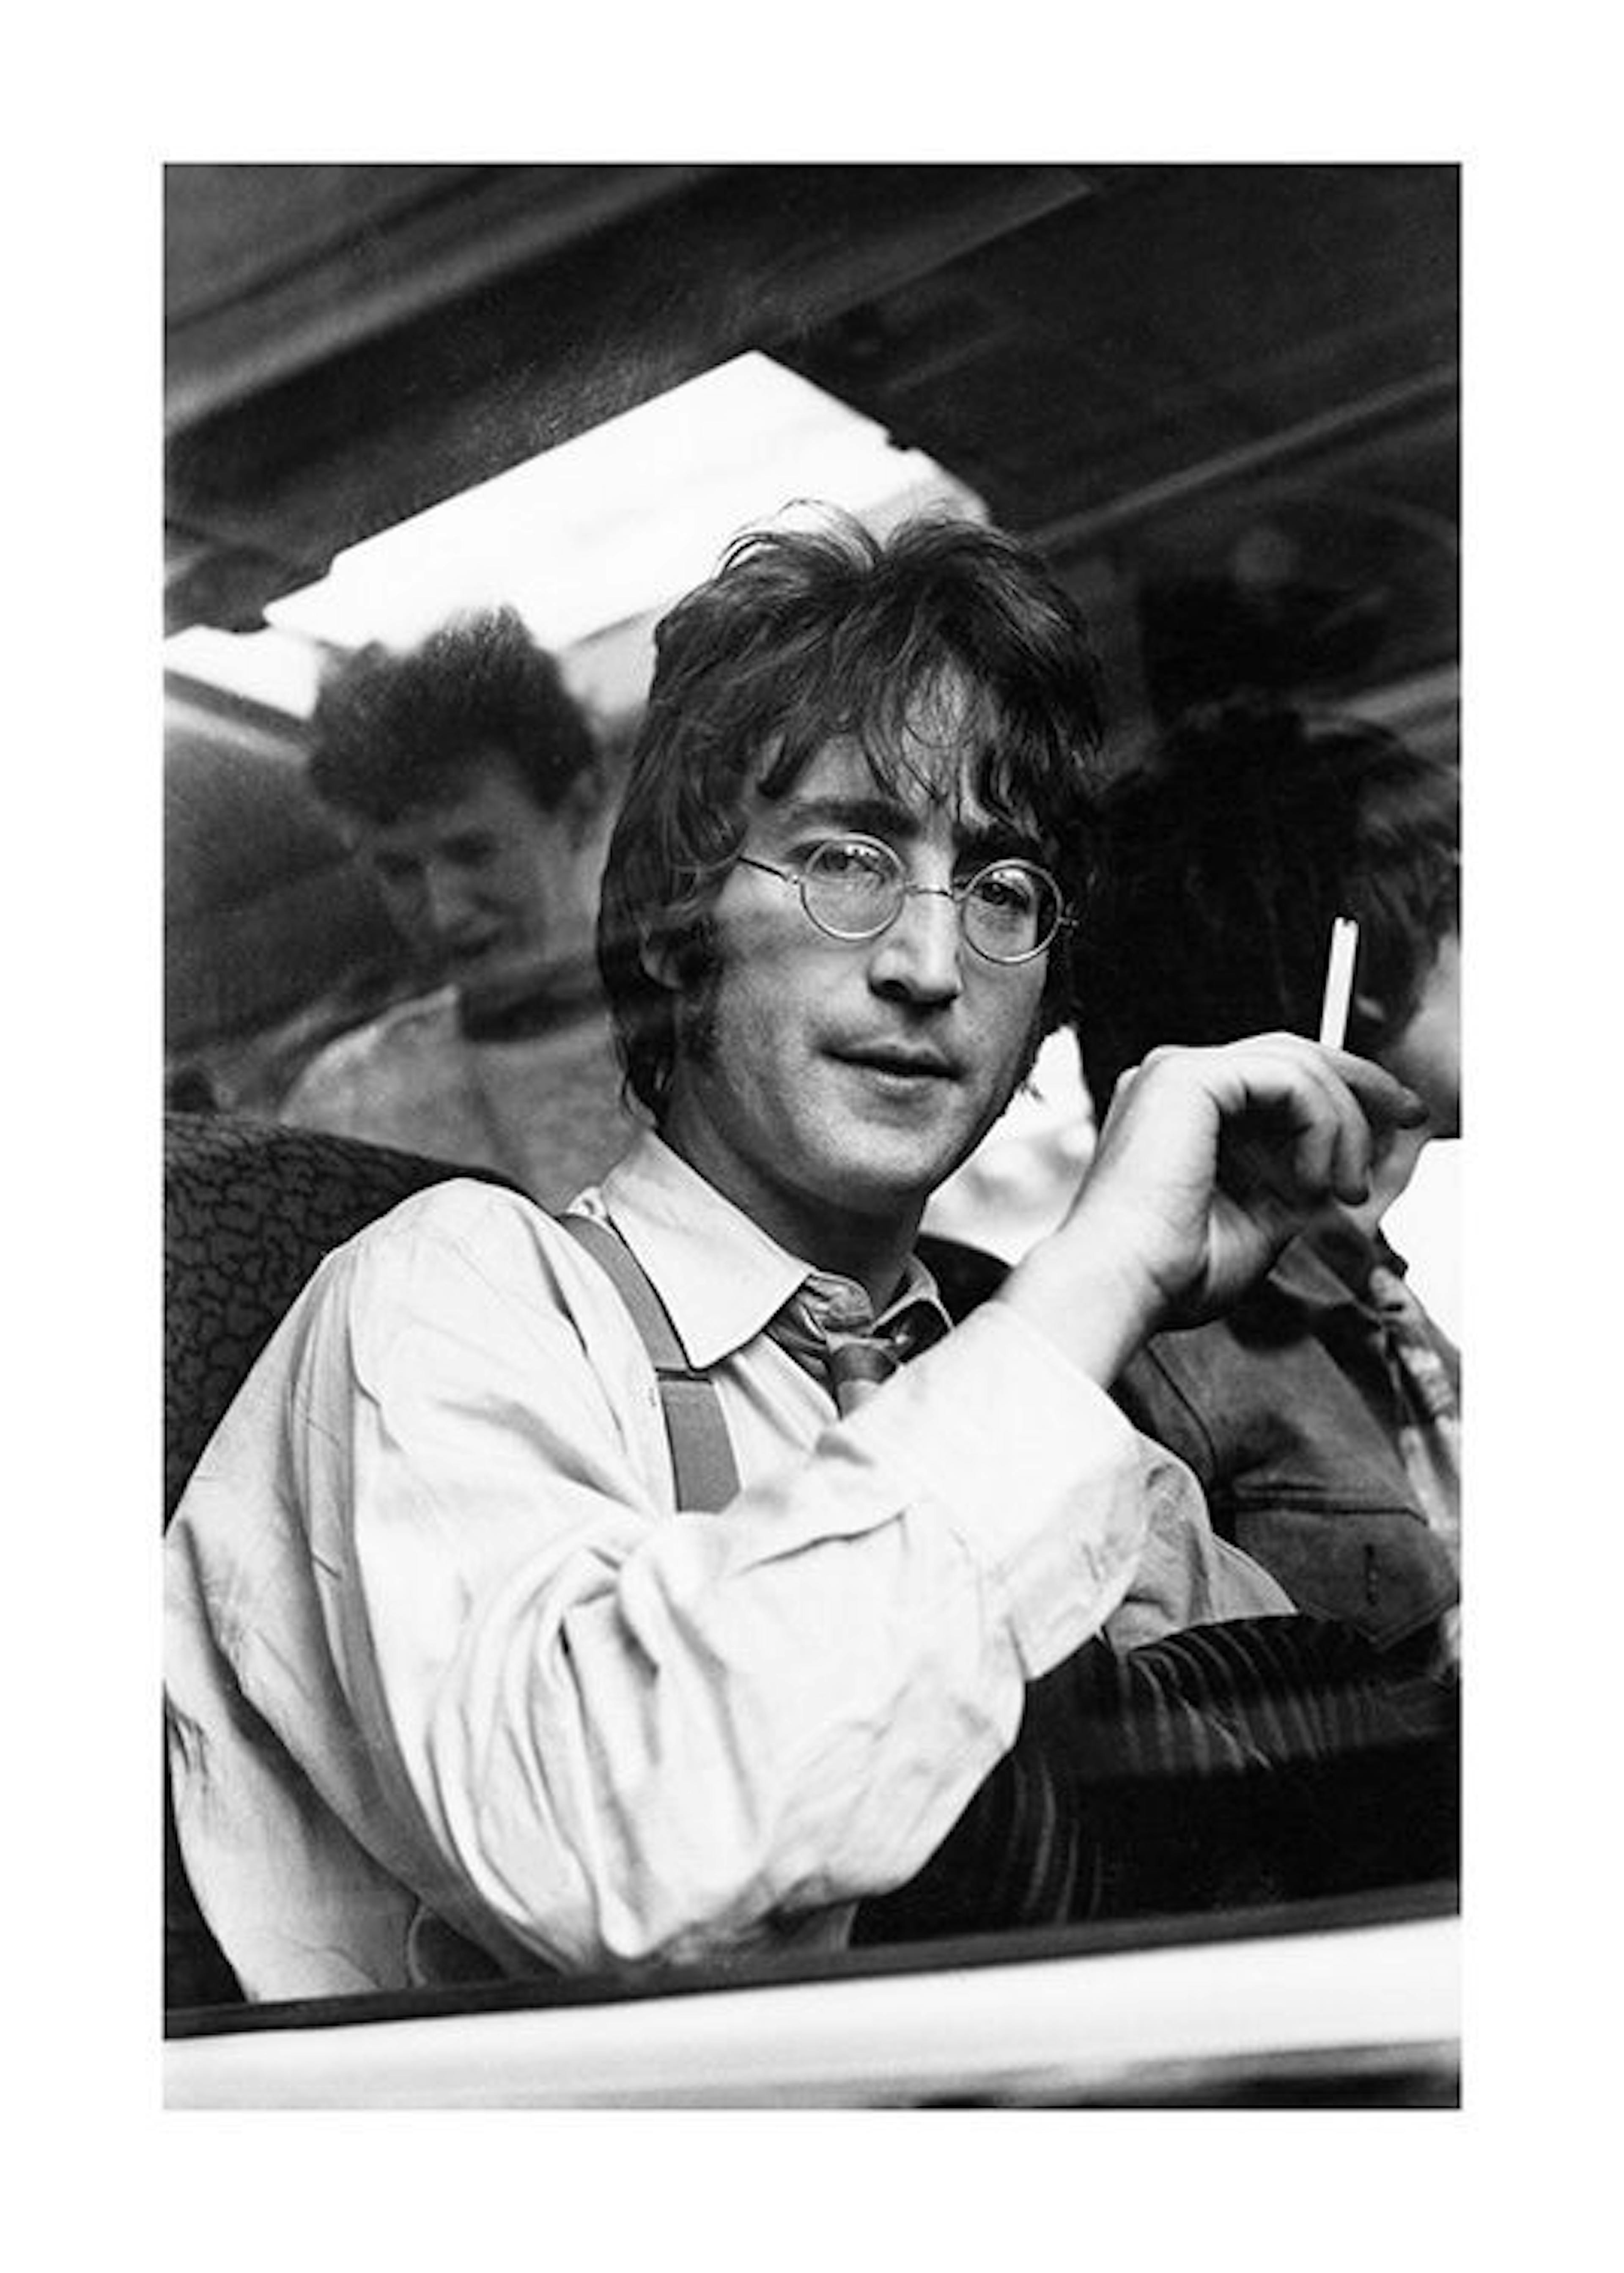 John Lennon Poster